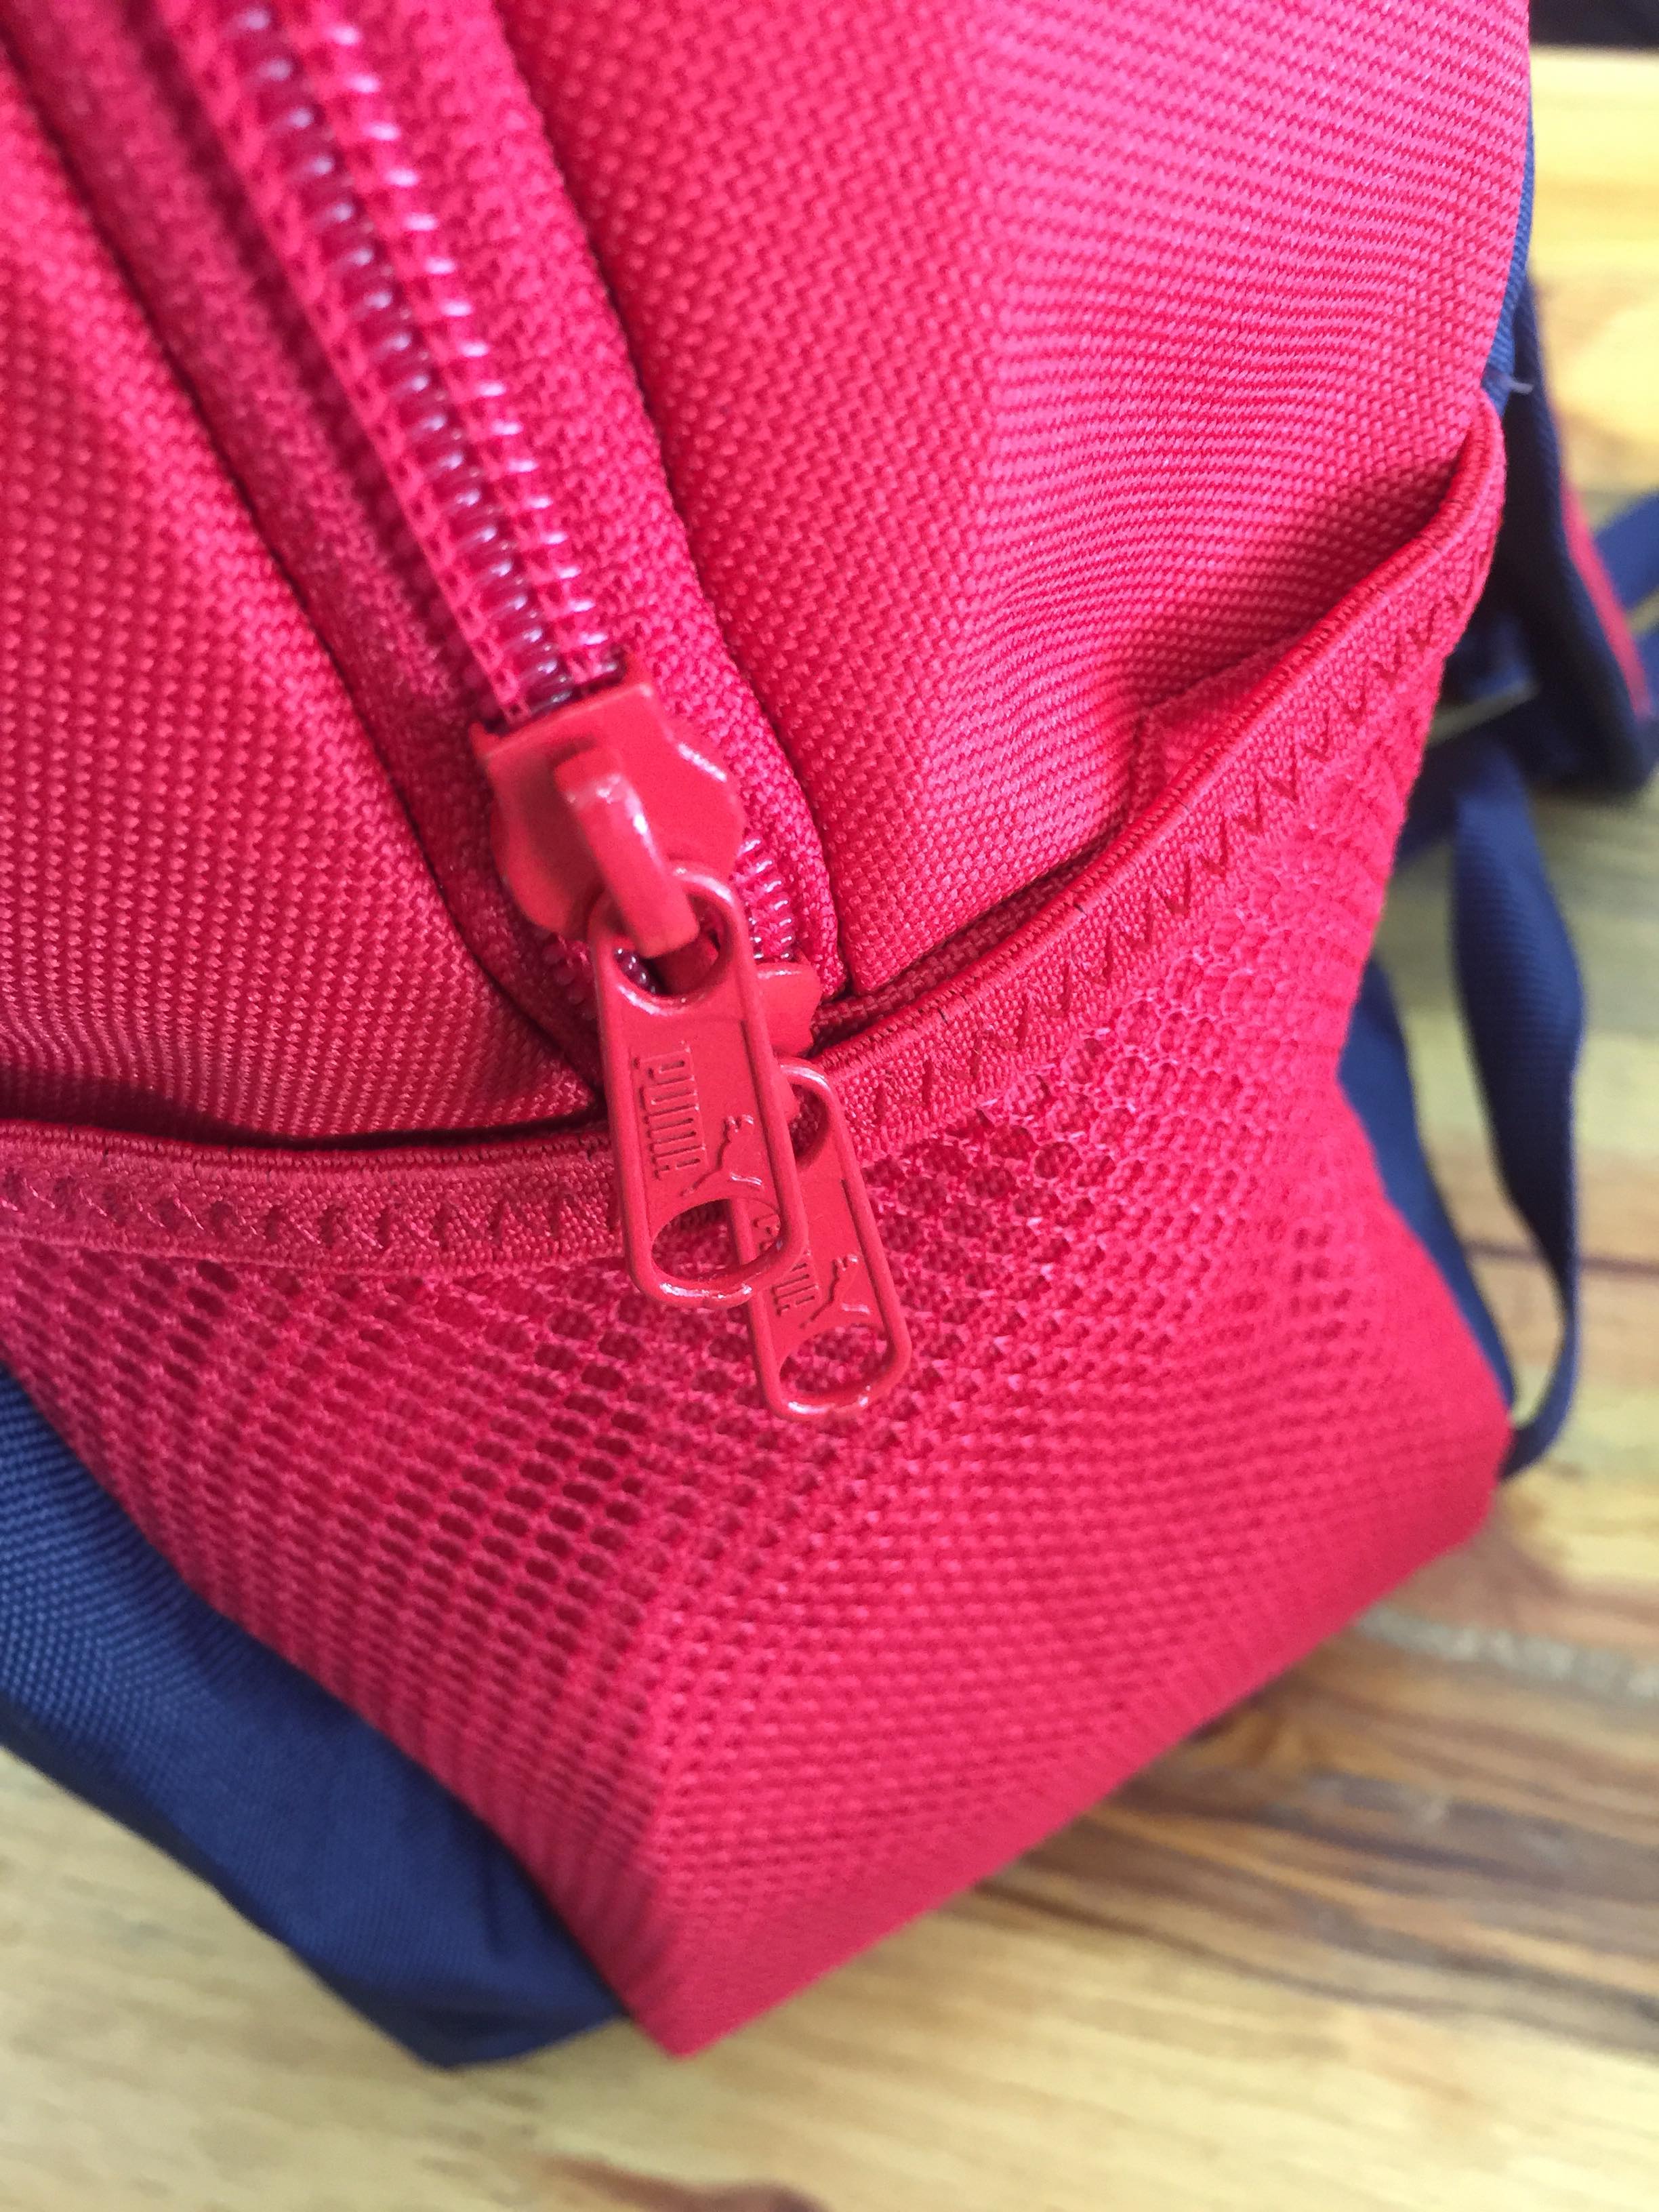 Balo thể thao Puma Phase Backpack 75487 nét quyến rũ từ thiết kế 8